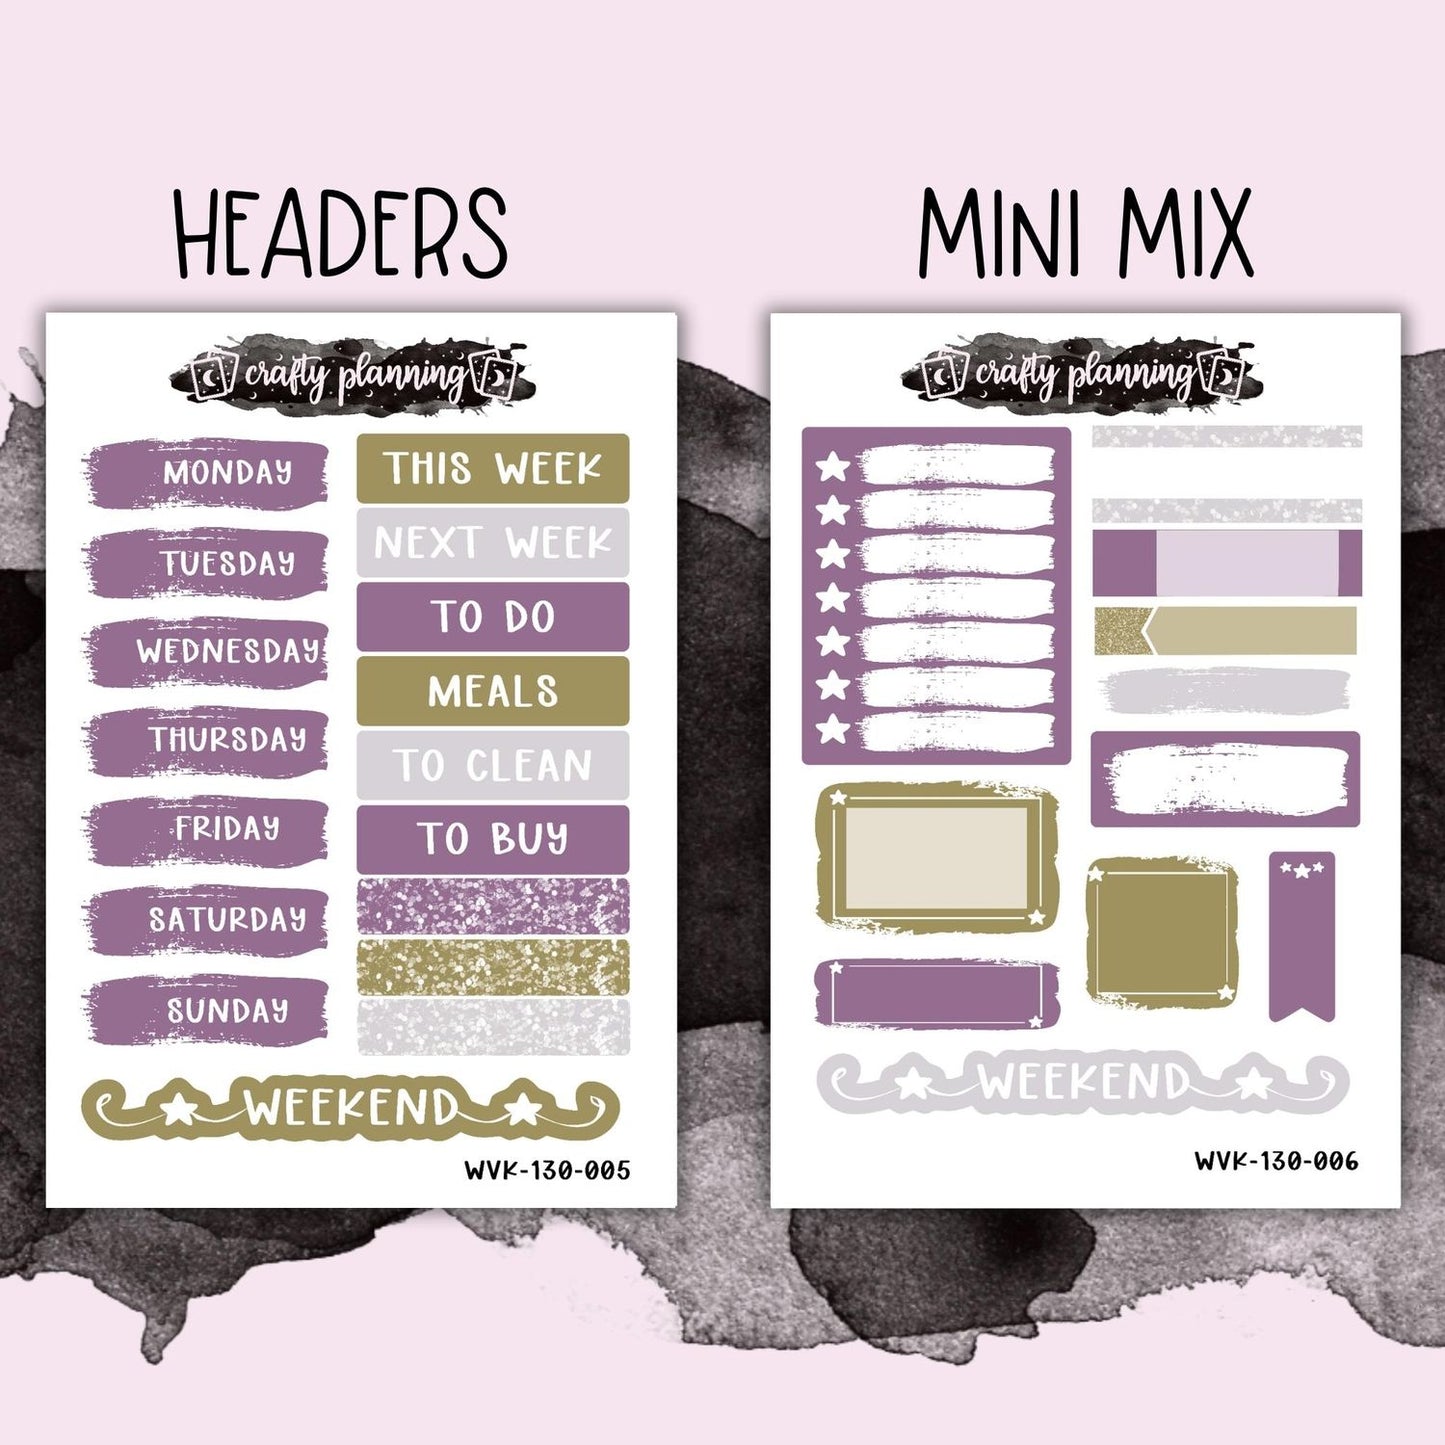 Highlands - Vertical Planner - Mix & Match Kits